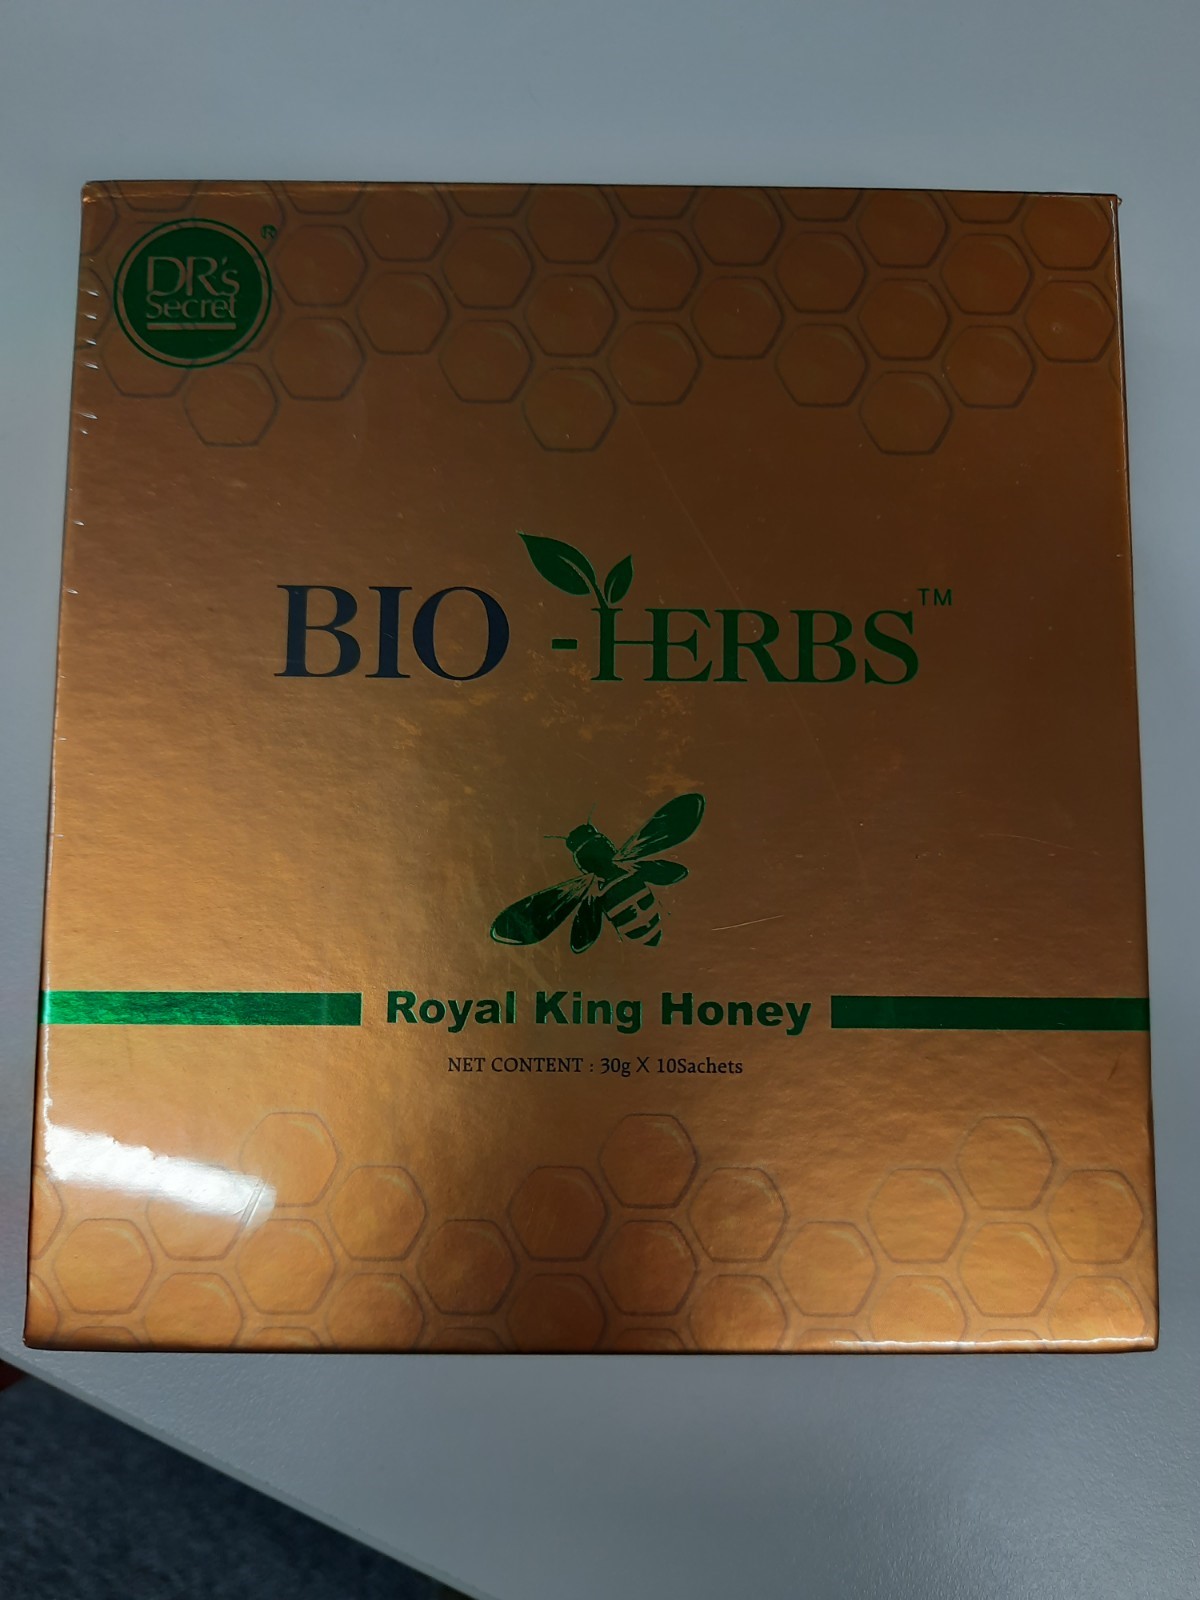 Billede af det ulovlige produkt: Bio-Herbs Royal King Honey